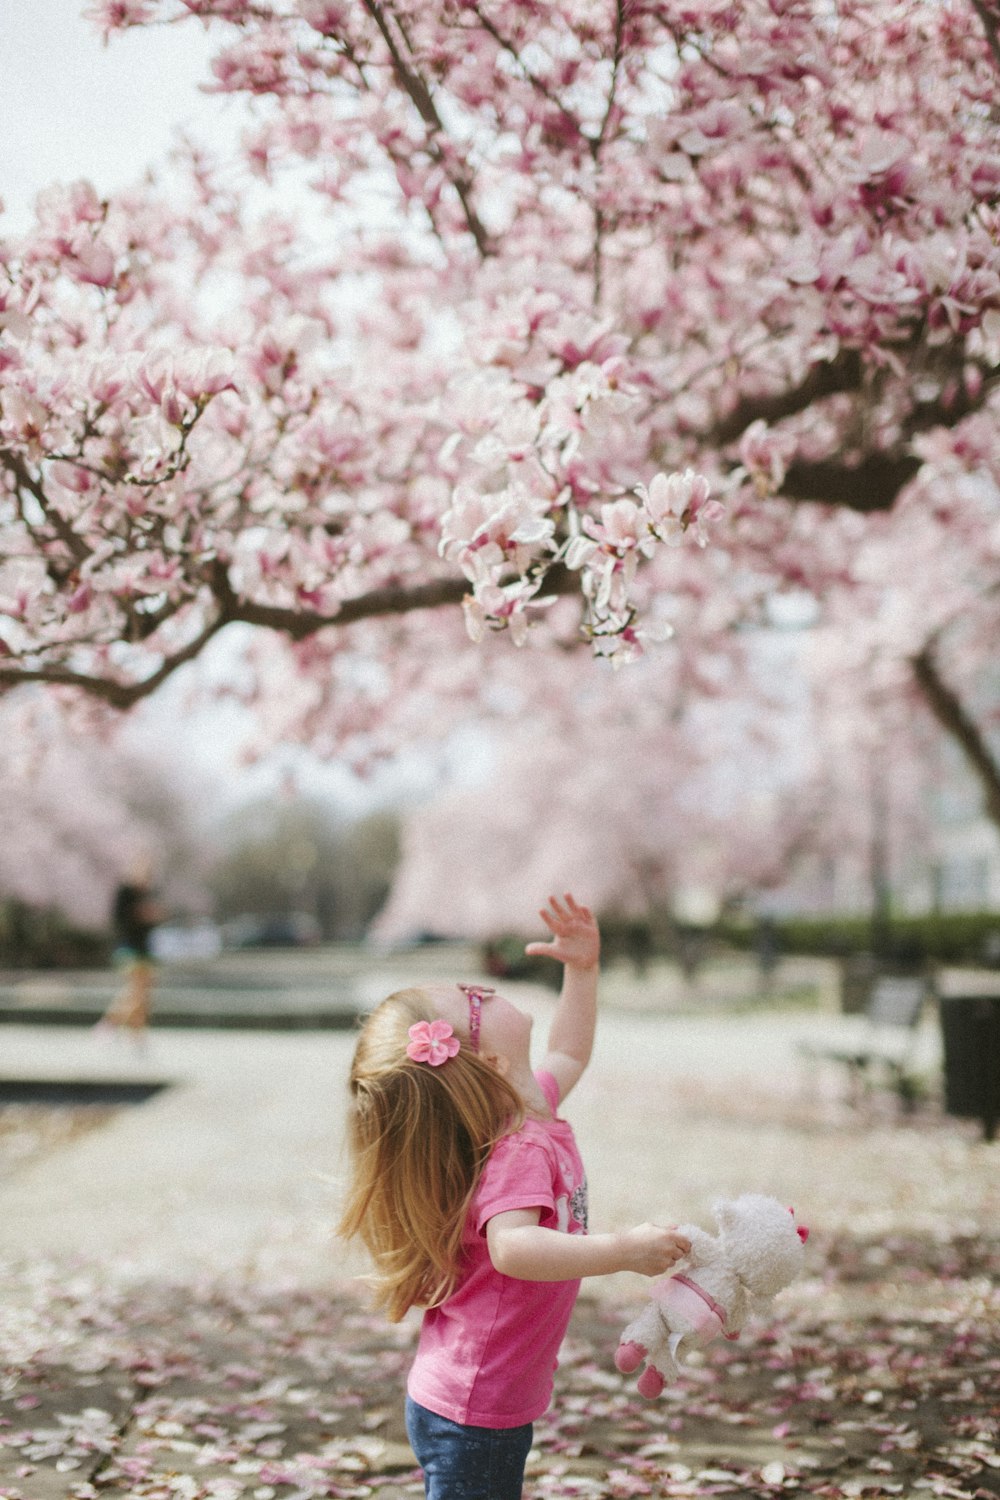 menina sob a árvore da flor da cerejeira